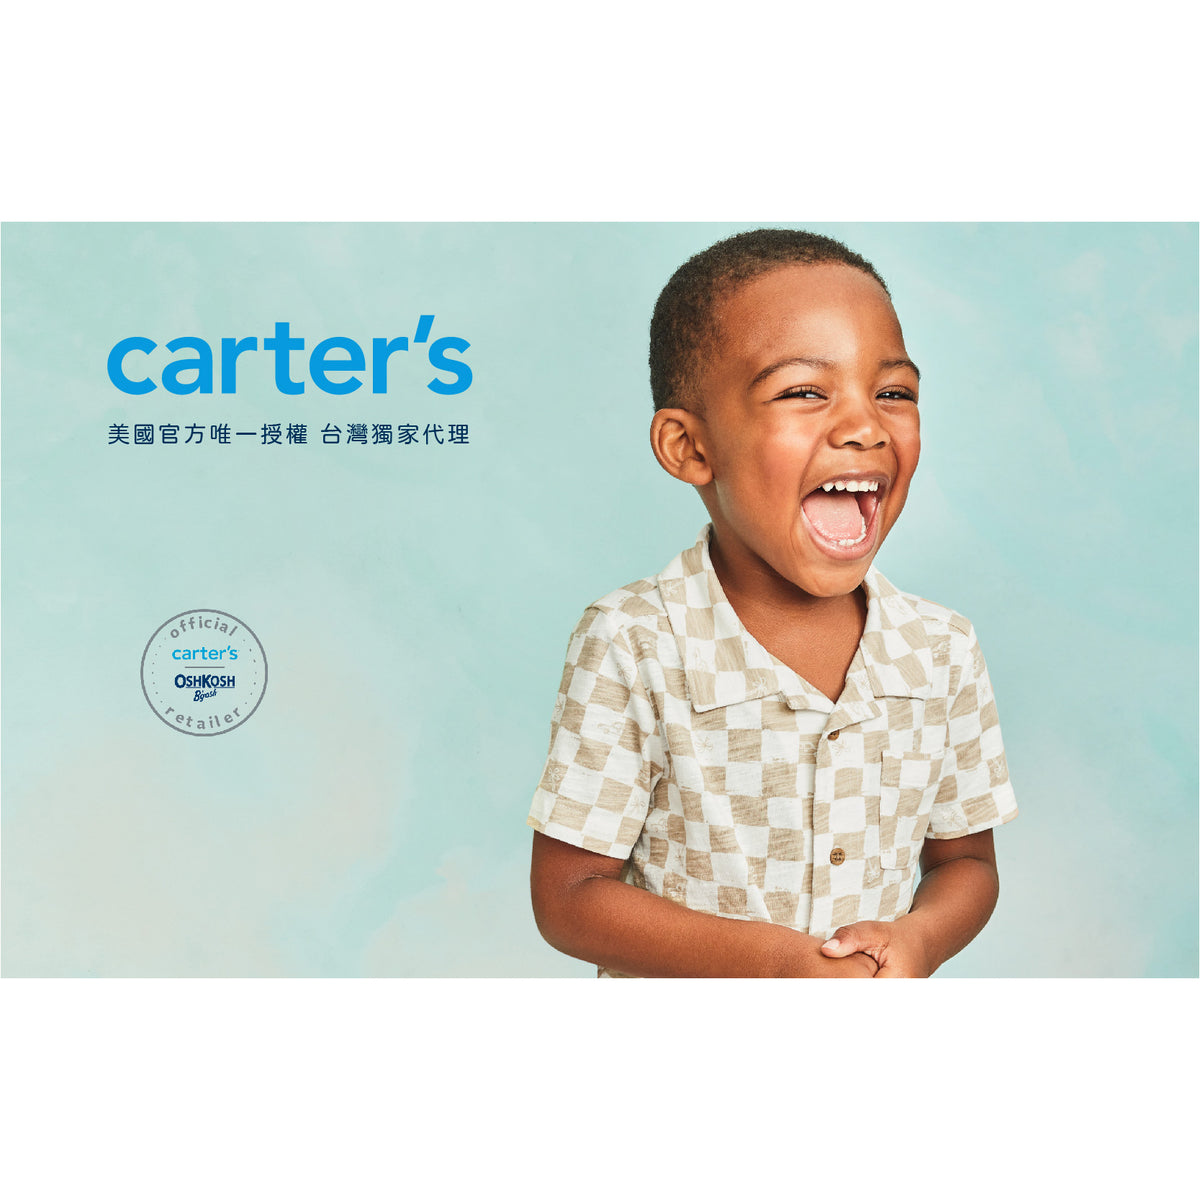 Carter's 墨綠色格紋襯衫(2T-5T)